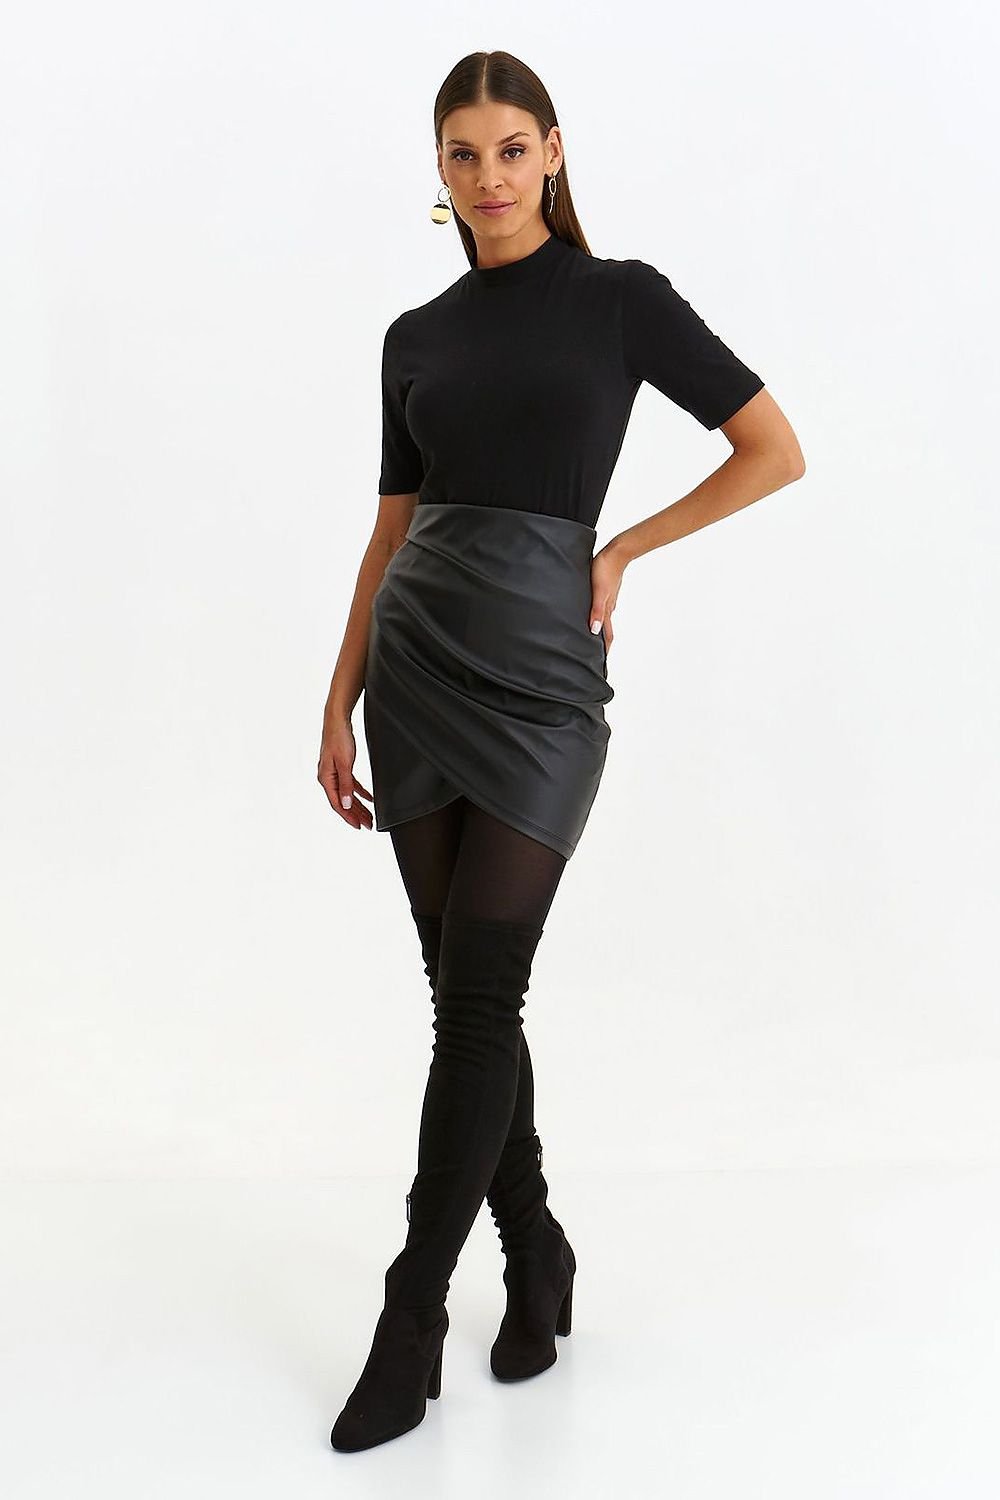 Jupe courte en simili cuir noir, coupe asymétrique, parfaite pour un look moderne et tendance, disponible sur jupe-courte-simili-cuir.